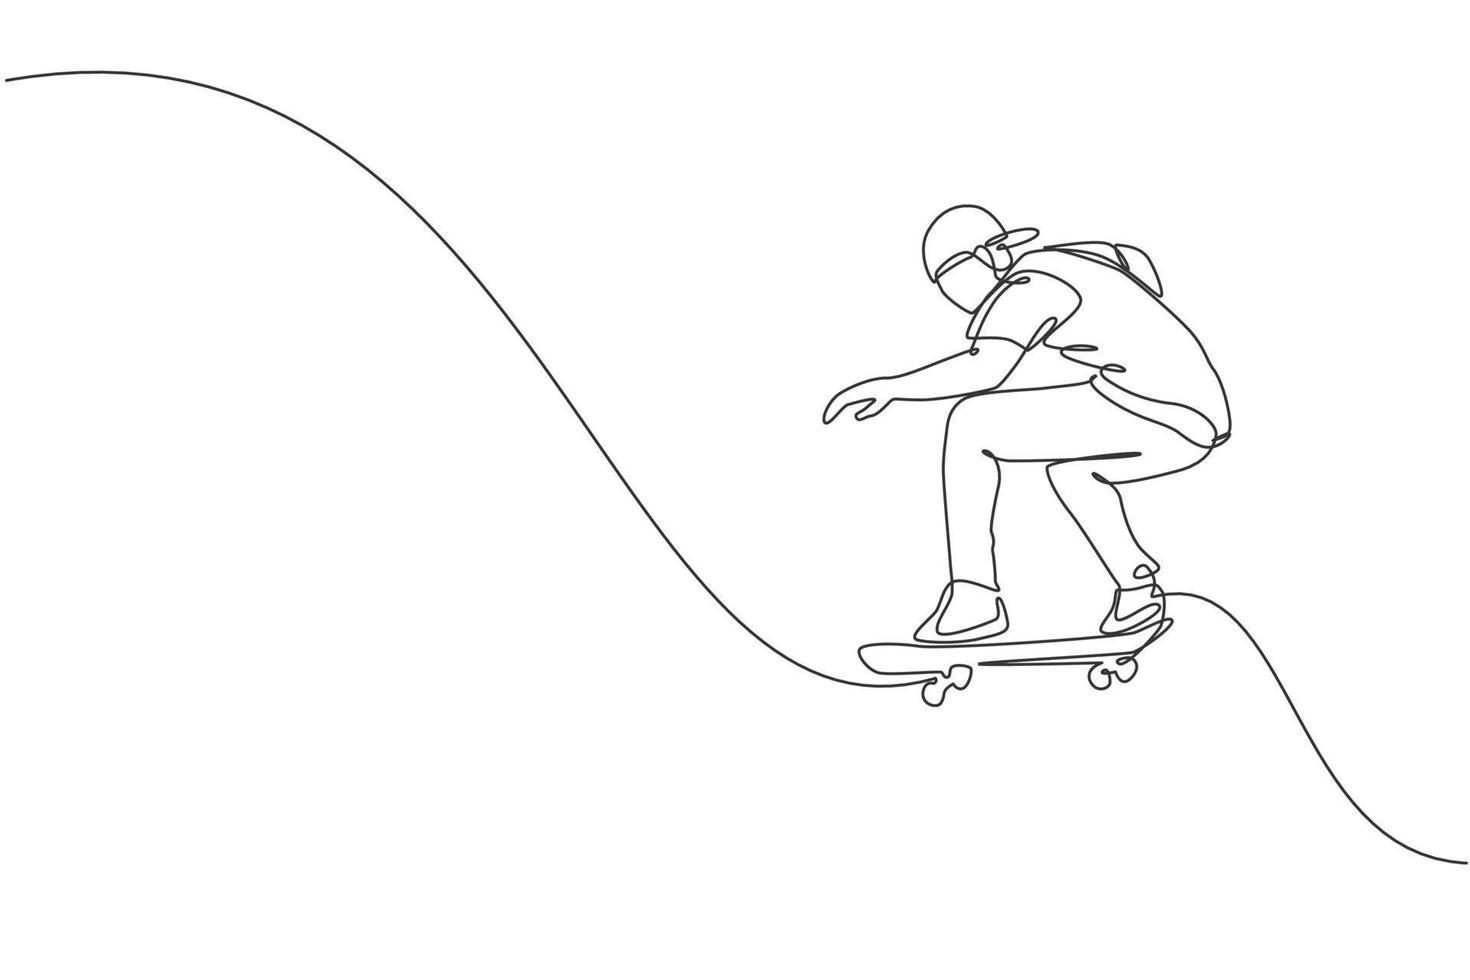 um desenho de linha contínua de um jovem skatista legal andando de skate e fazendo um truque de salto no skatepark. conceito de esporte adolescente extremo. ilustração em vetor design de desenho de linha única dinâmica